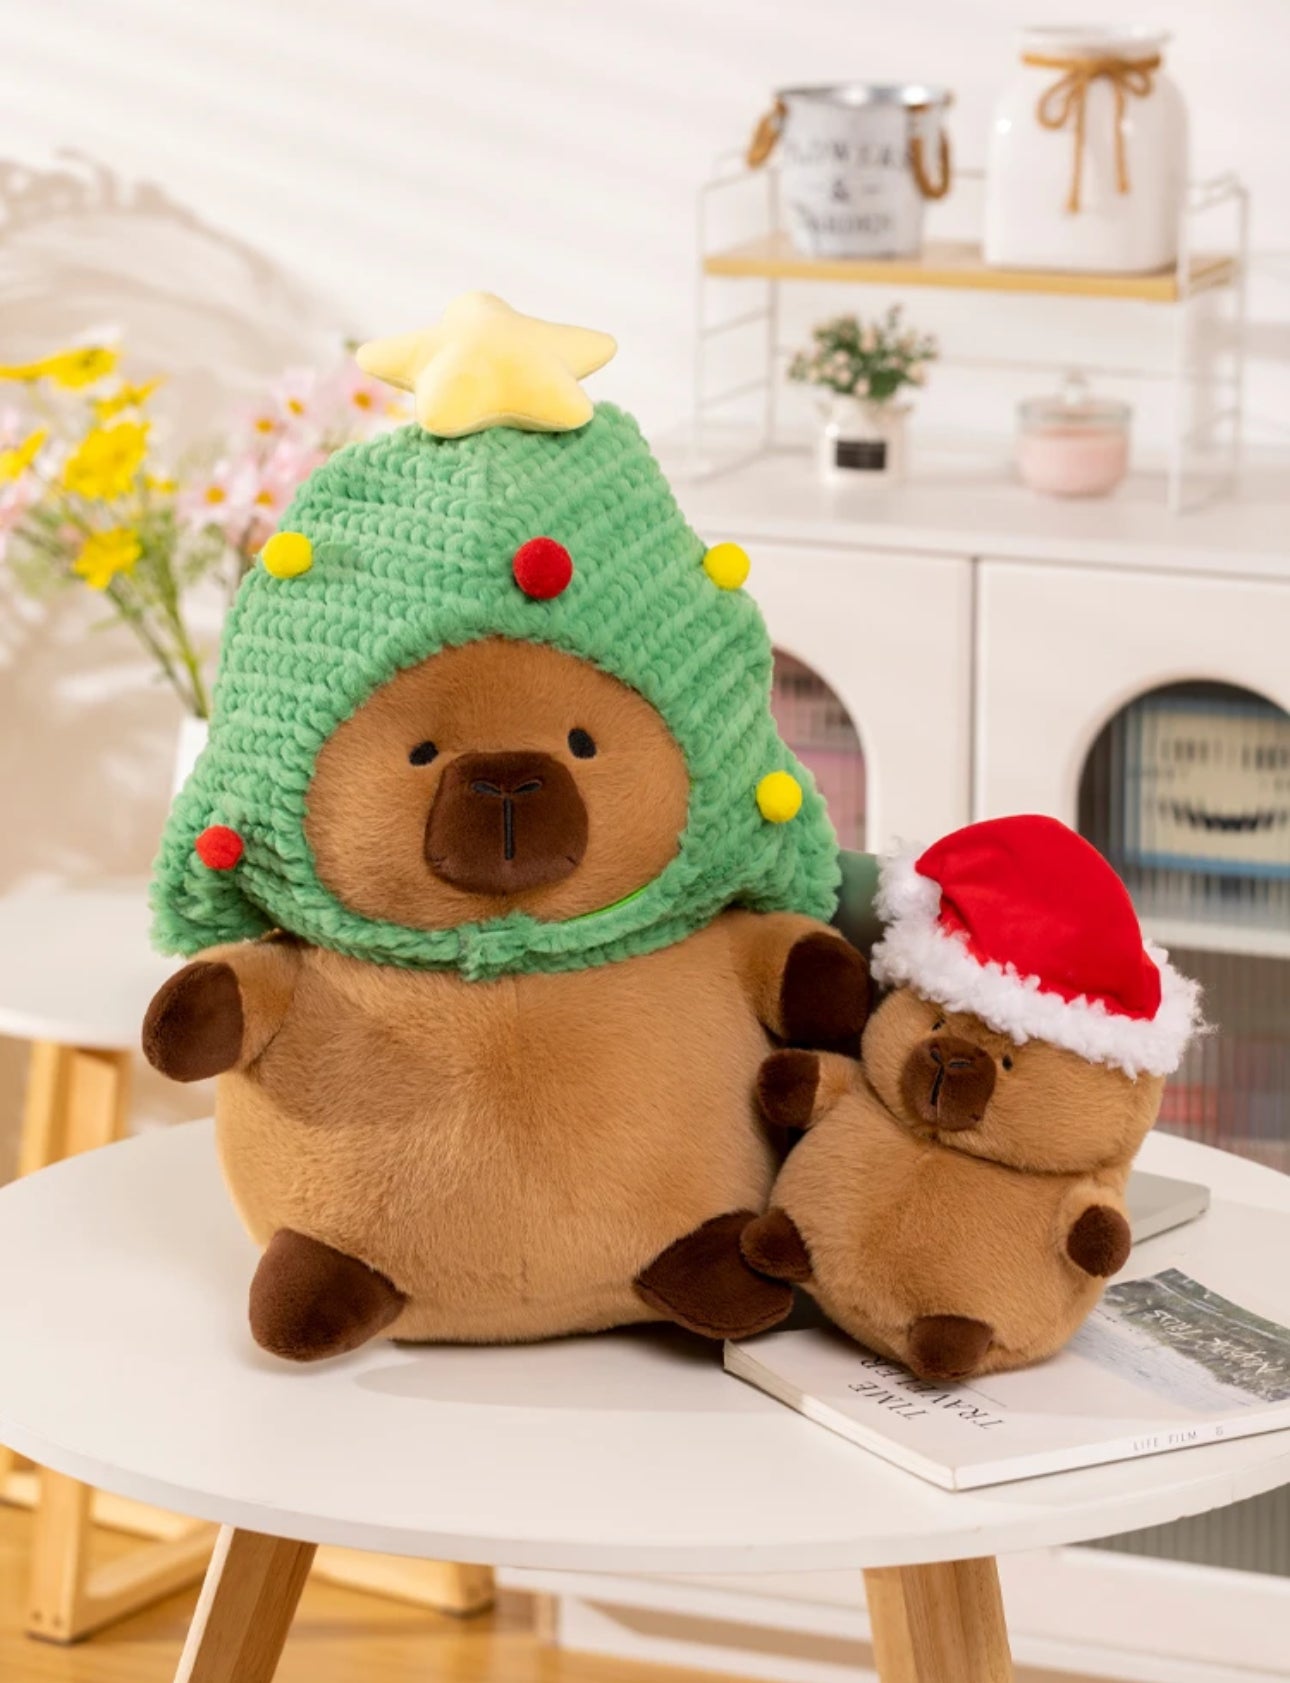 Capybara familia de navidad